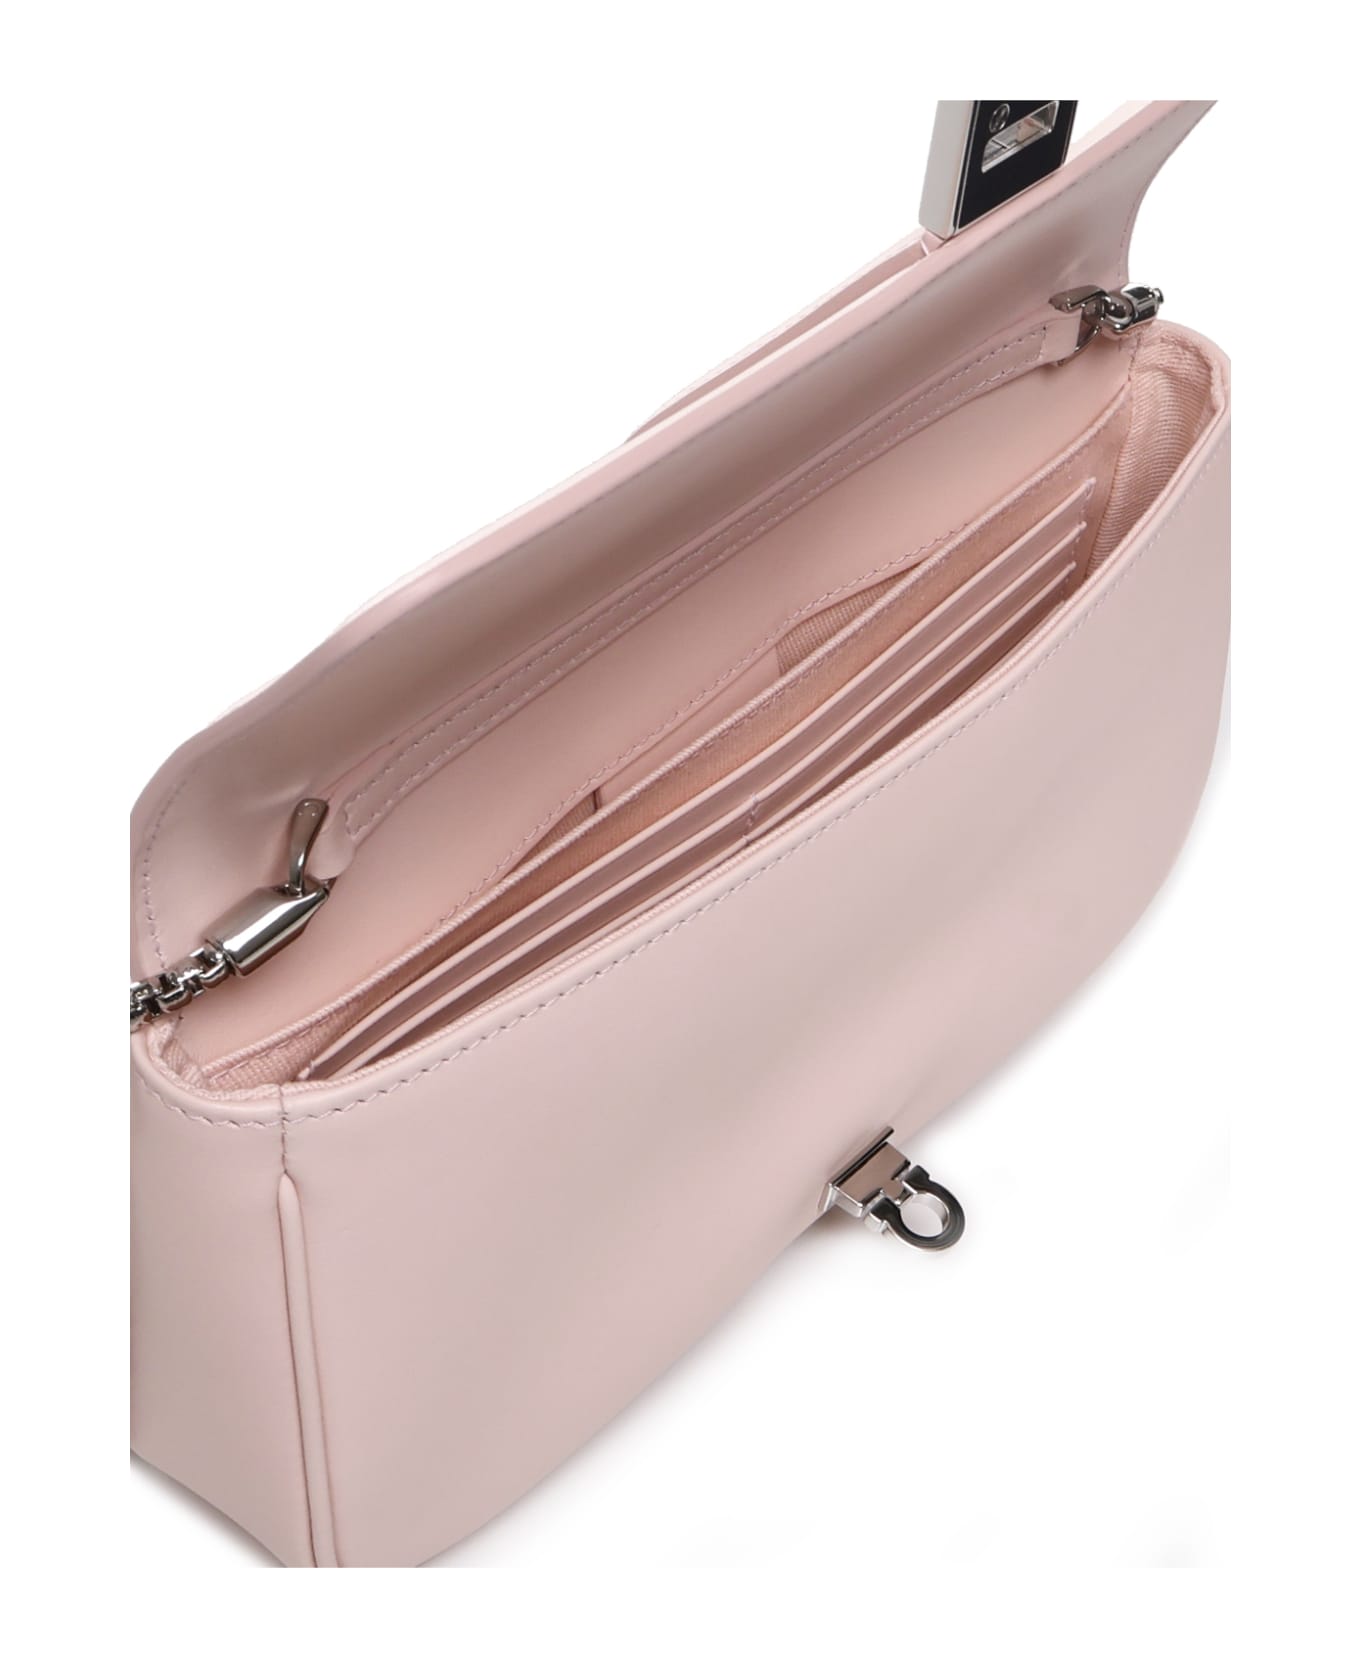 Ferragamo Shoulder Bag With Gancini Buckle - Pink